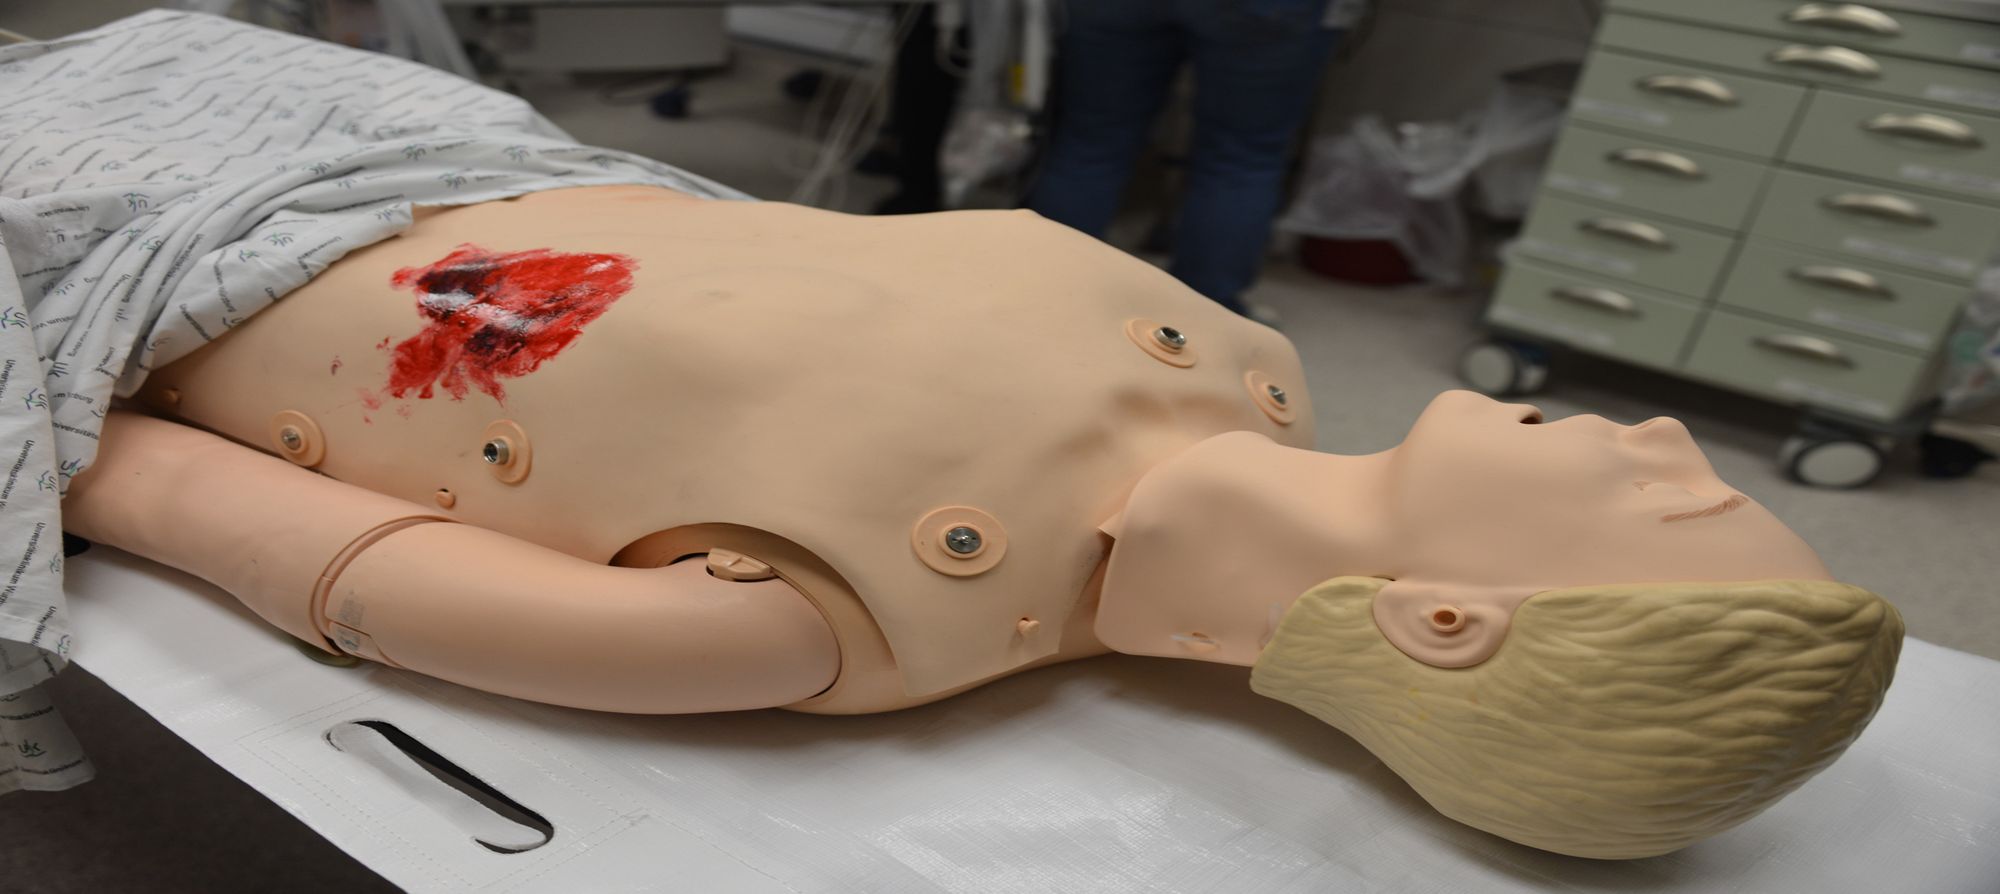 Realitätsnahe Vorbereitung des Full-Scale-Simulators für die Darstellung eines Traumapatienten.